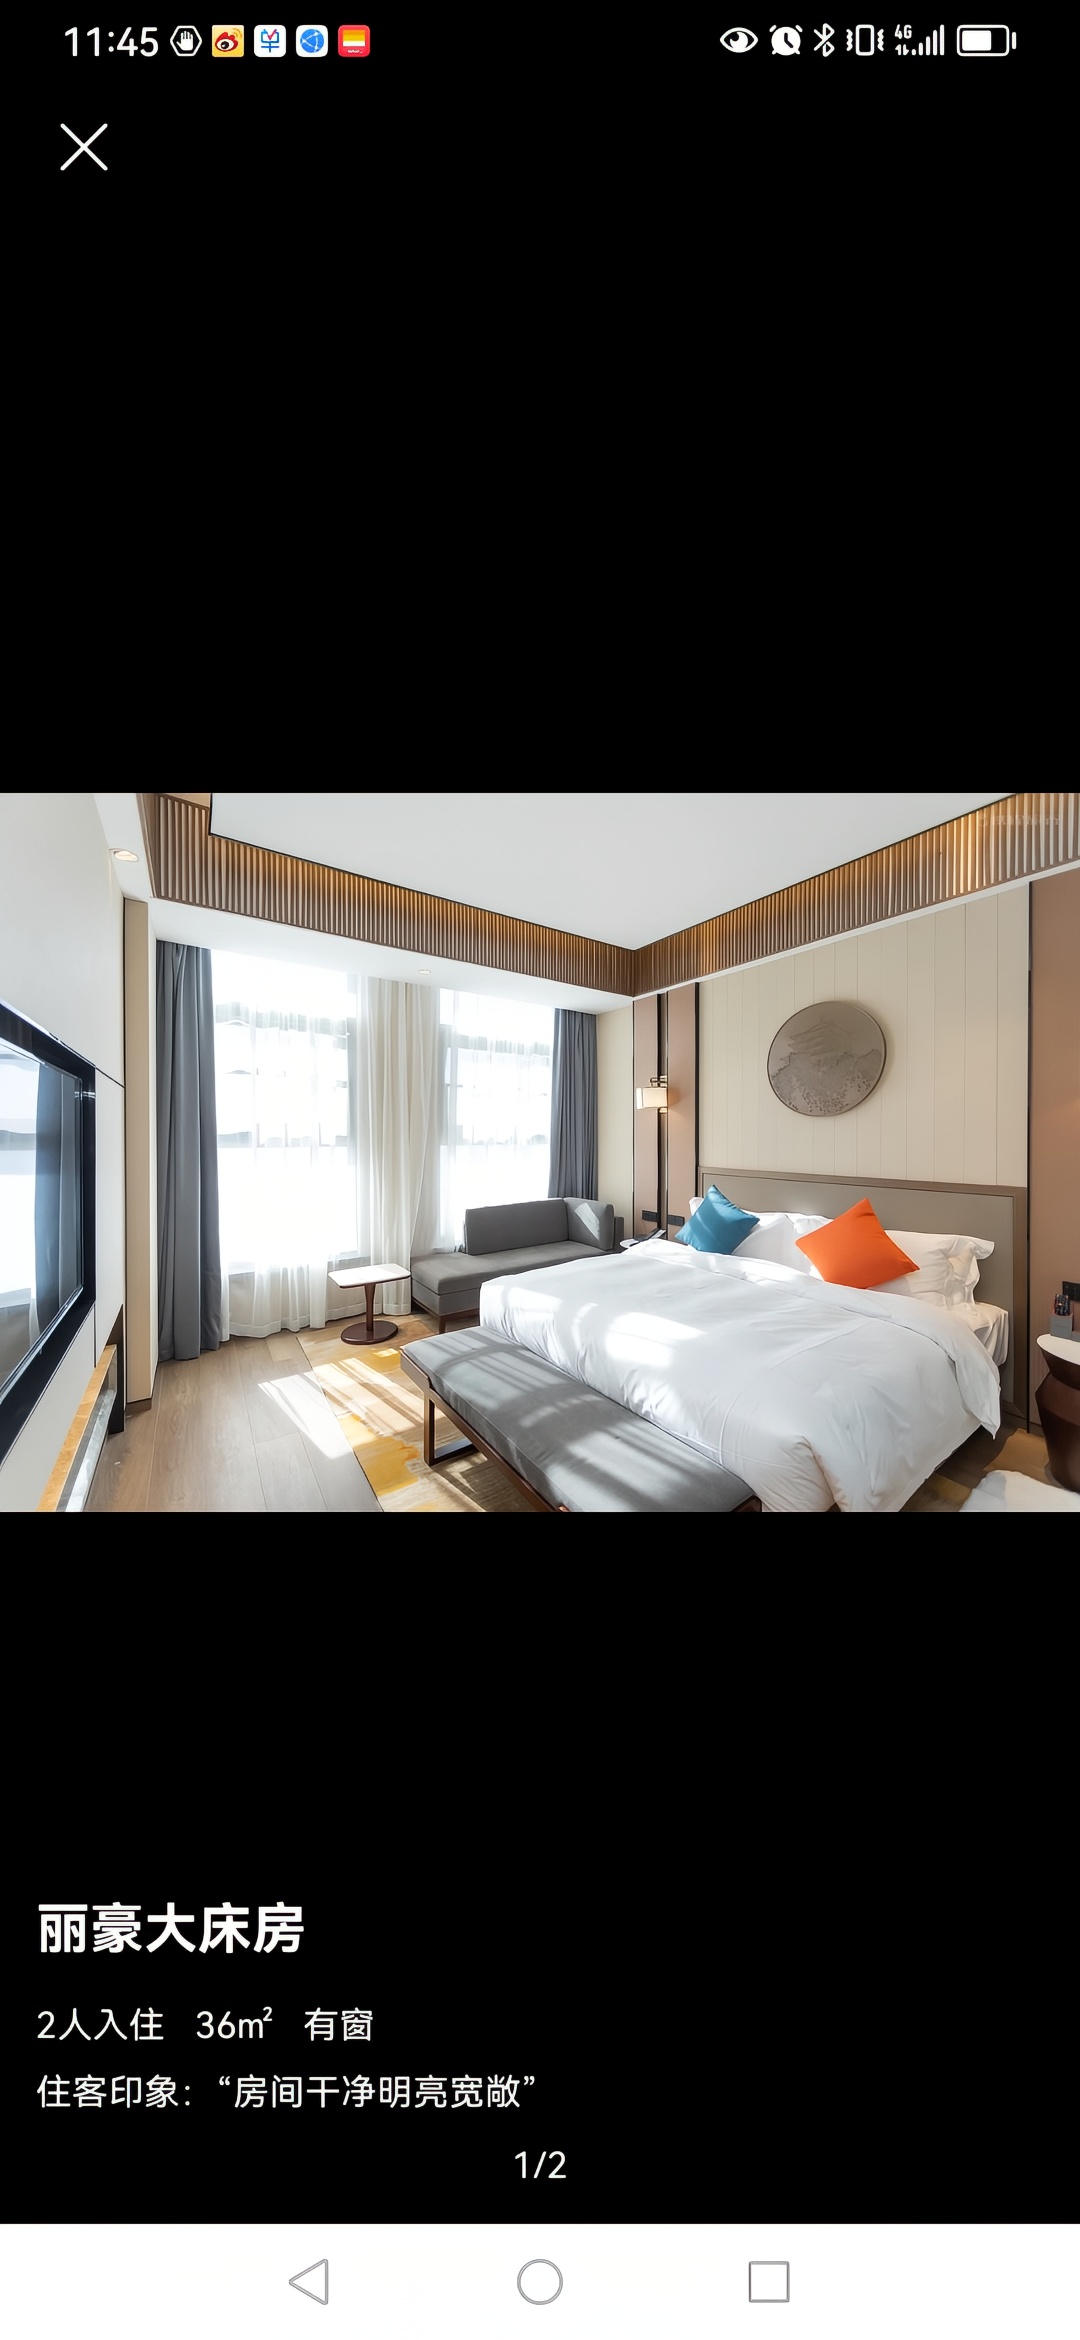 我认为是洛川最好的酒店，环境优美，设施干净，舒服，房间宽敞明亮，非常喜欢，有机会到洛川，还会选择木兰